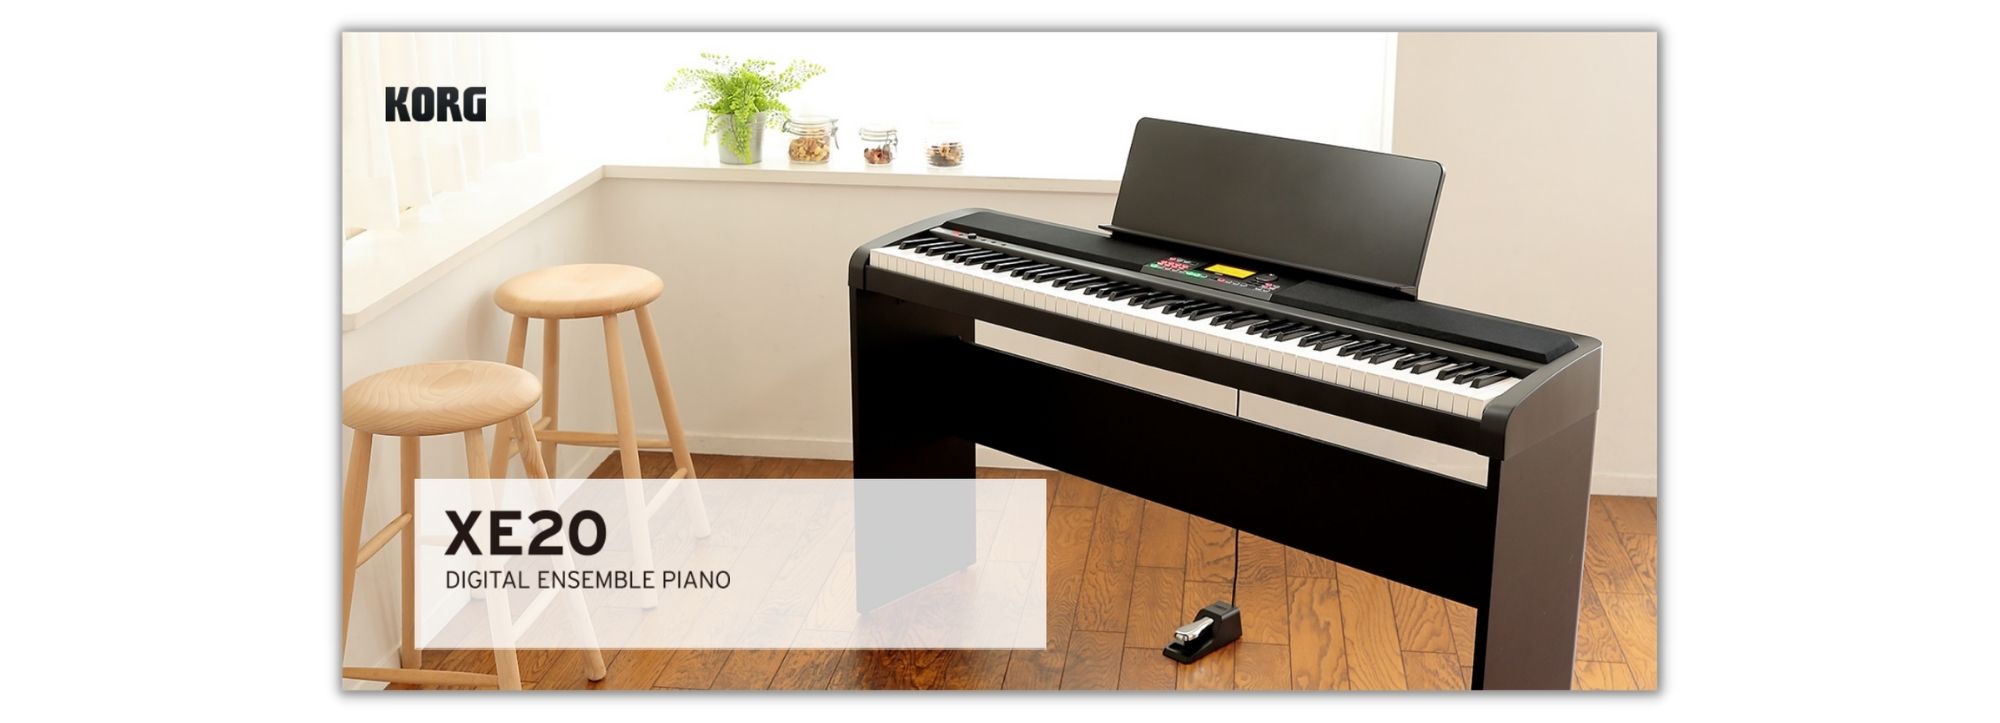 פסנתר חשמלי רהיט KORG XE20SP